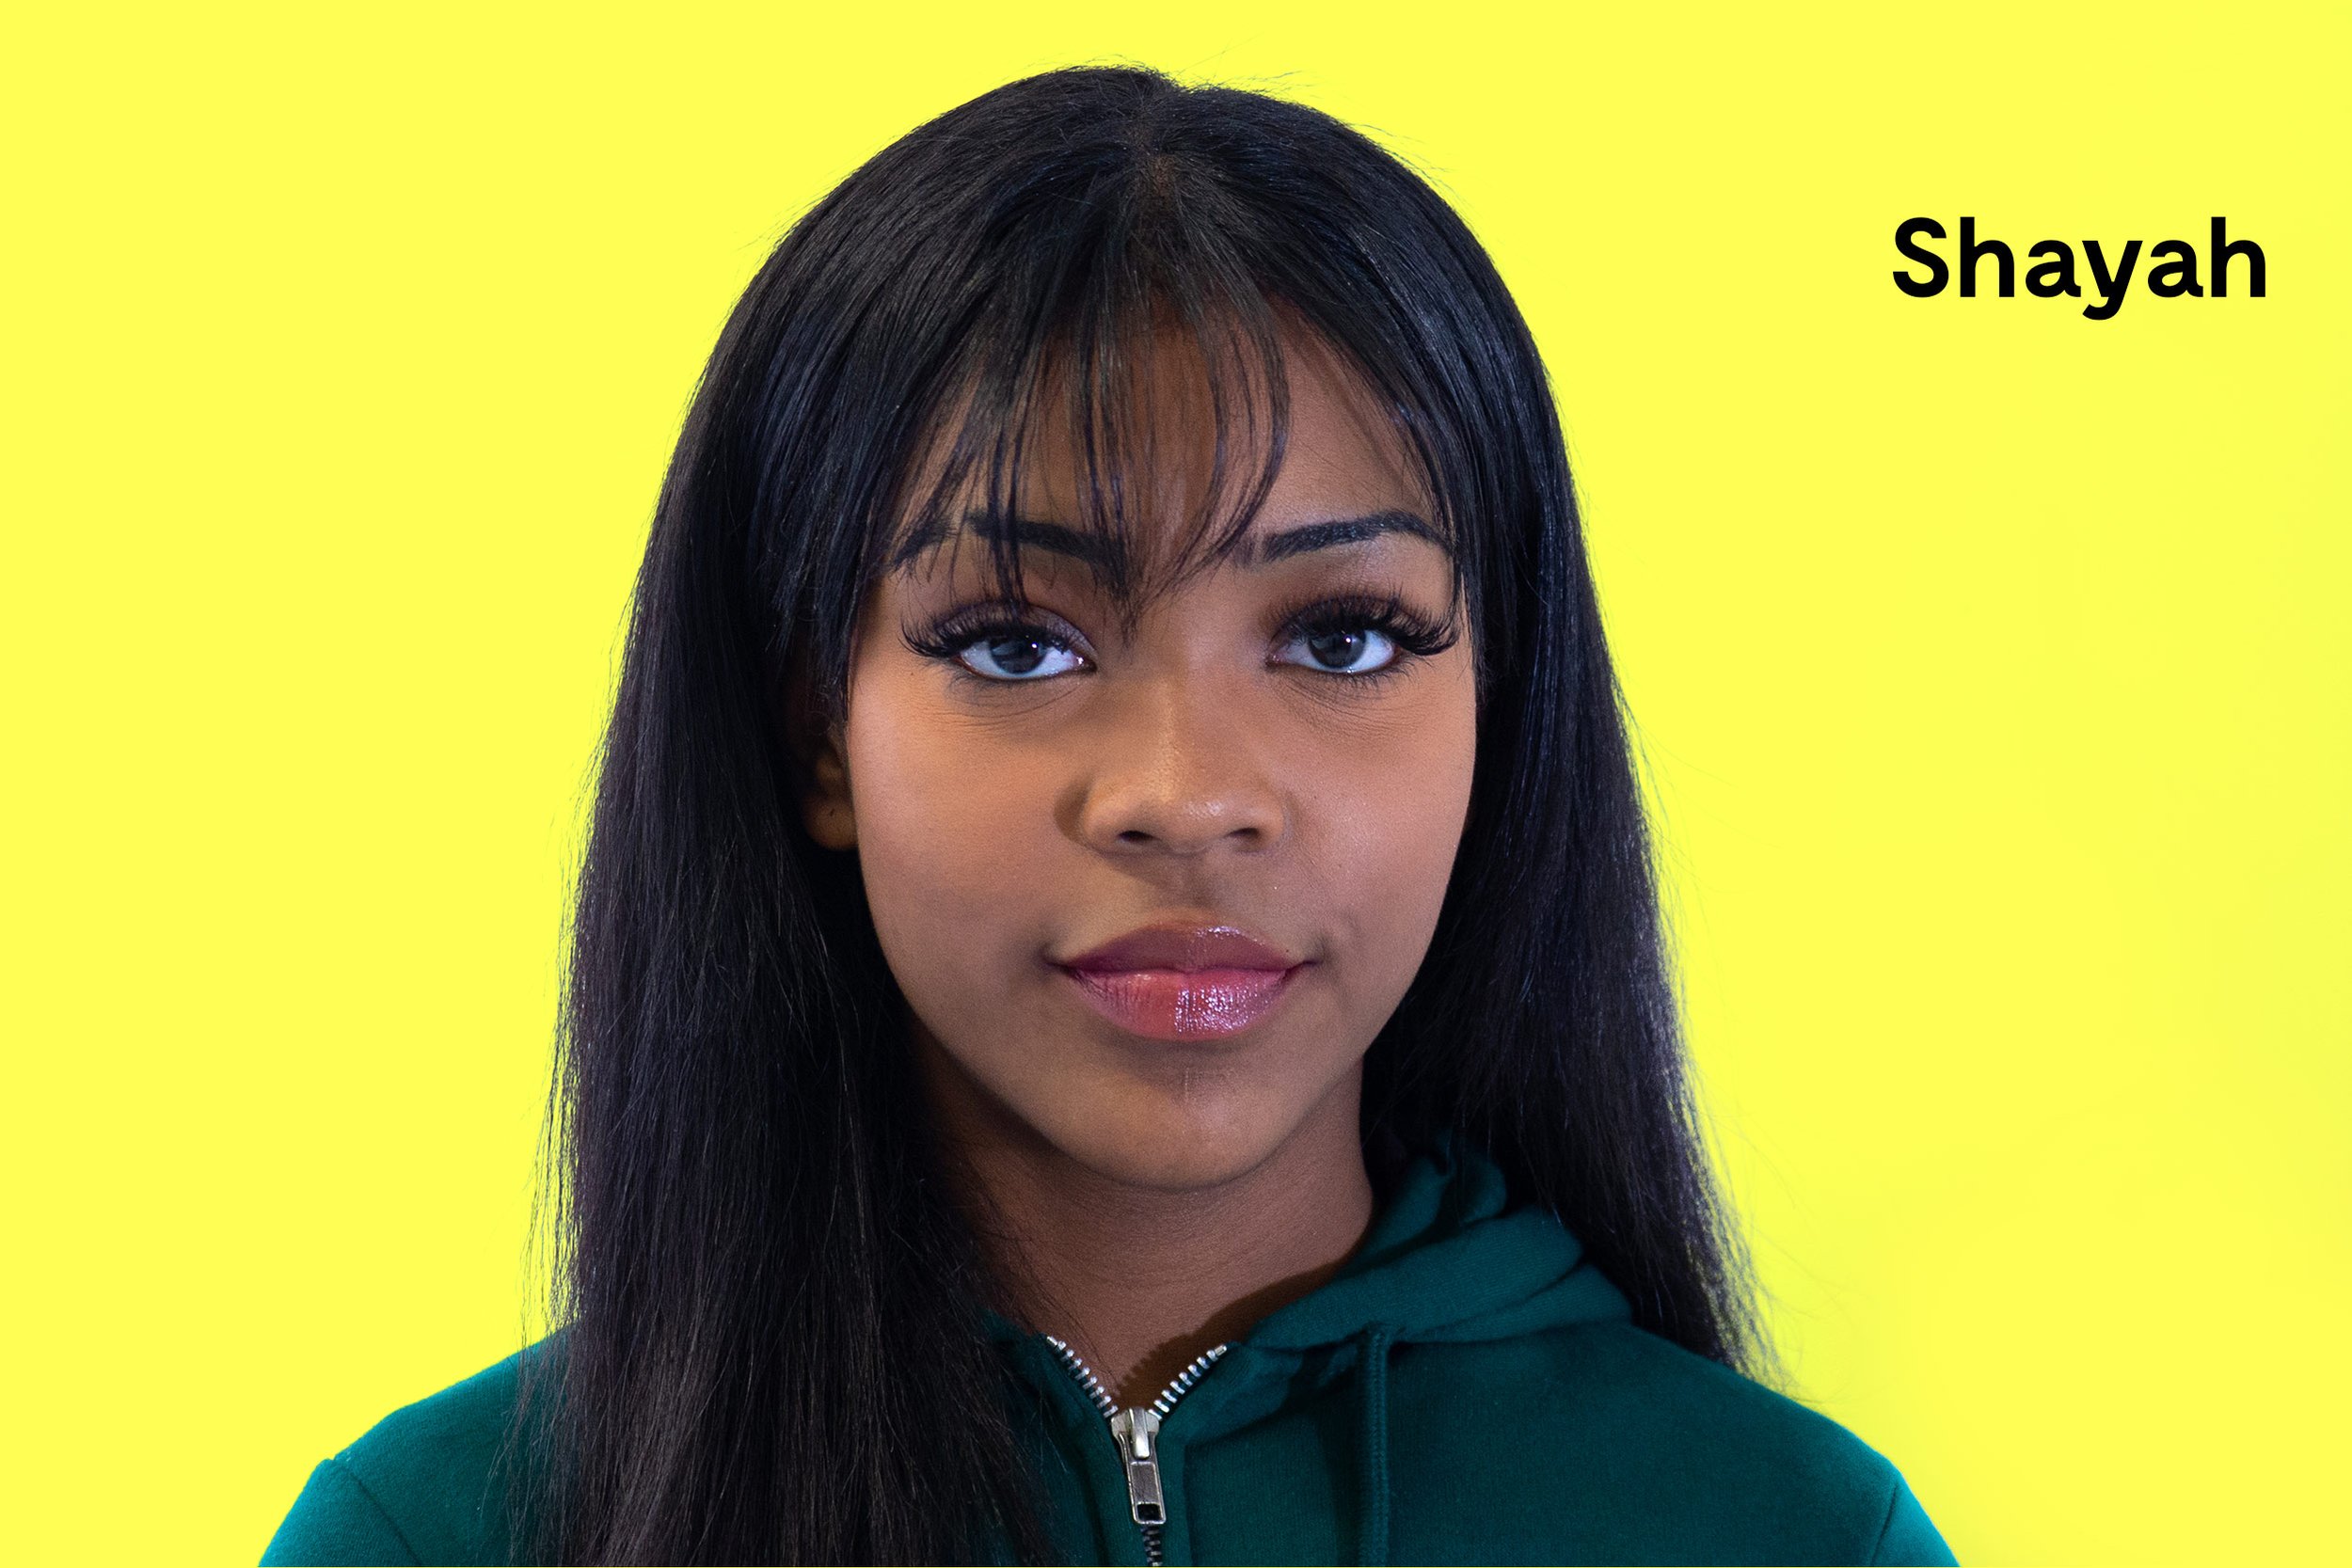  Shayah Corbin (née en 2006) souhaite, dans le cadre de À l'image - Takeover, partager son point de vue d'adolescente noire explorant son identité. Shayah apprend l'importance de la perspective et de l'ouverture d'esprit. Après avoir obtenu son diplô